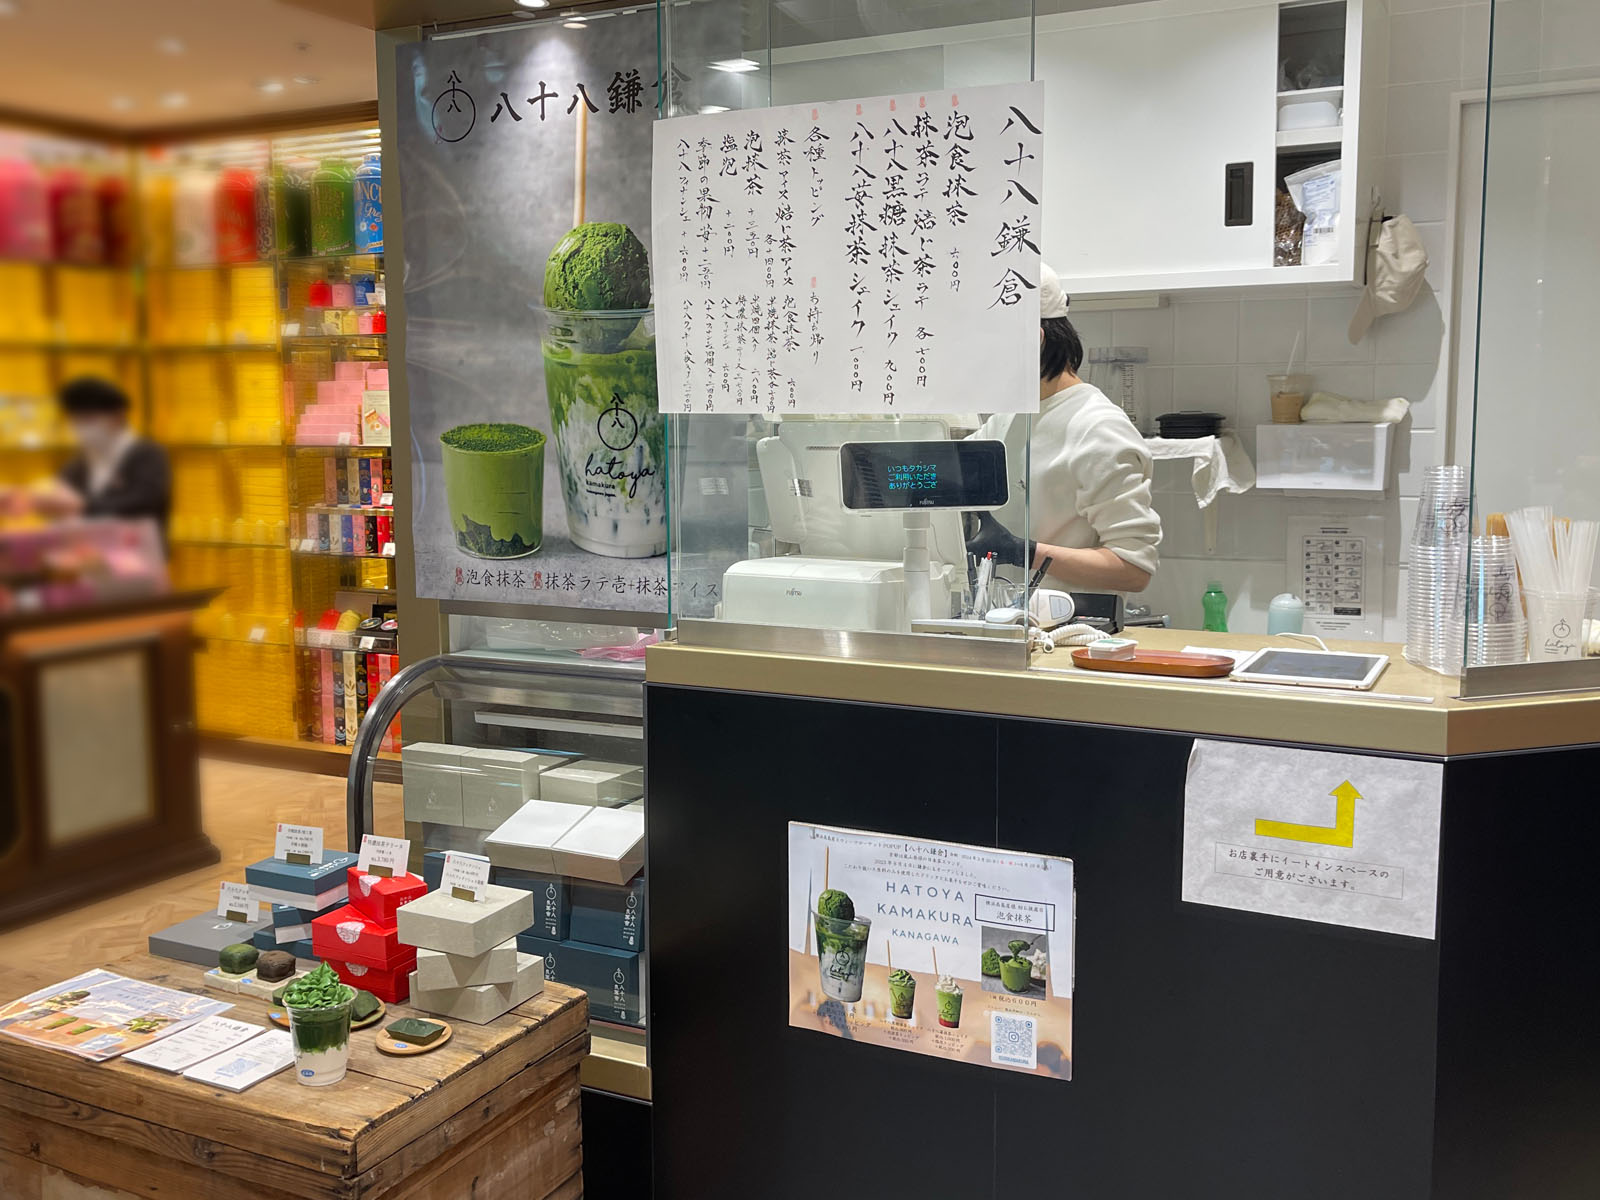 日本茶スタンド「八十八鎌倉(はとやかまくら)」が横浜高島屋に期間限定でオープン！